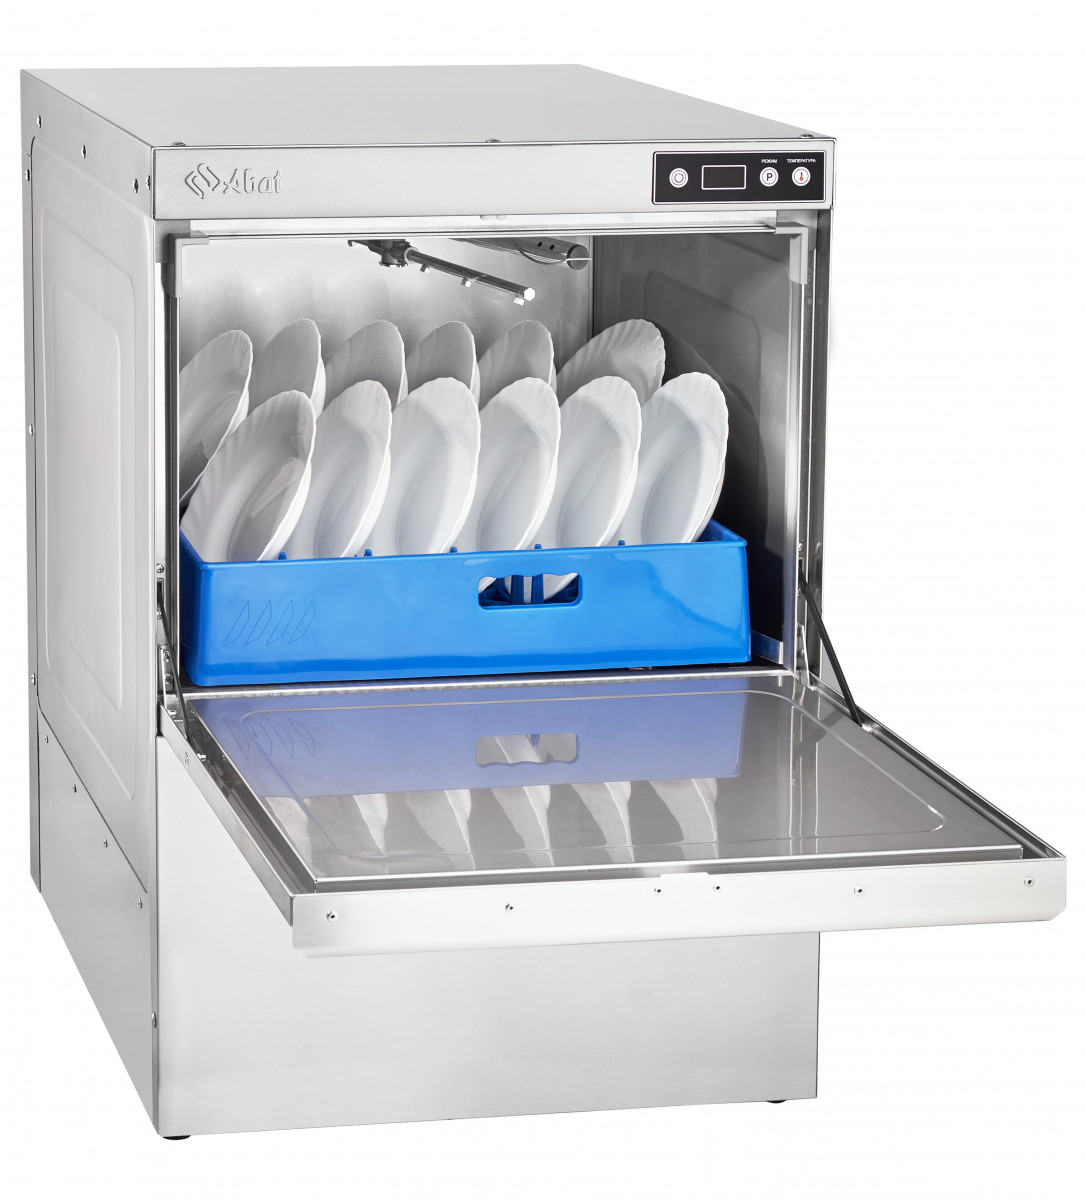 Машина посудомоечная фронтальная 500 тарелок/час ABAT МПК-500Ф-01-230 Машины посудомоечные